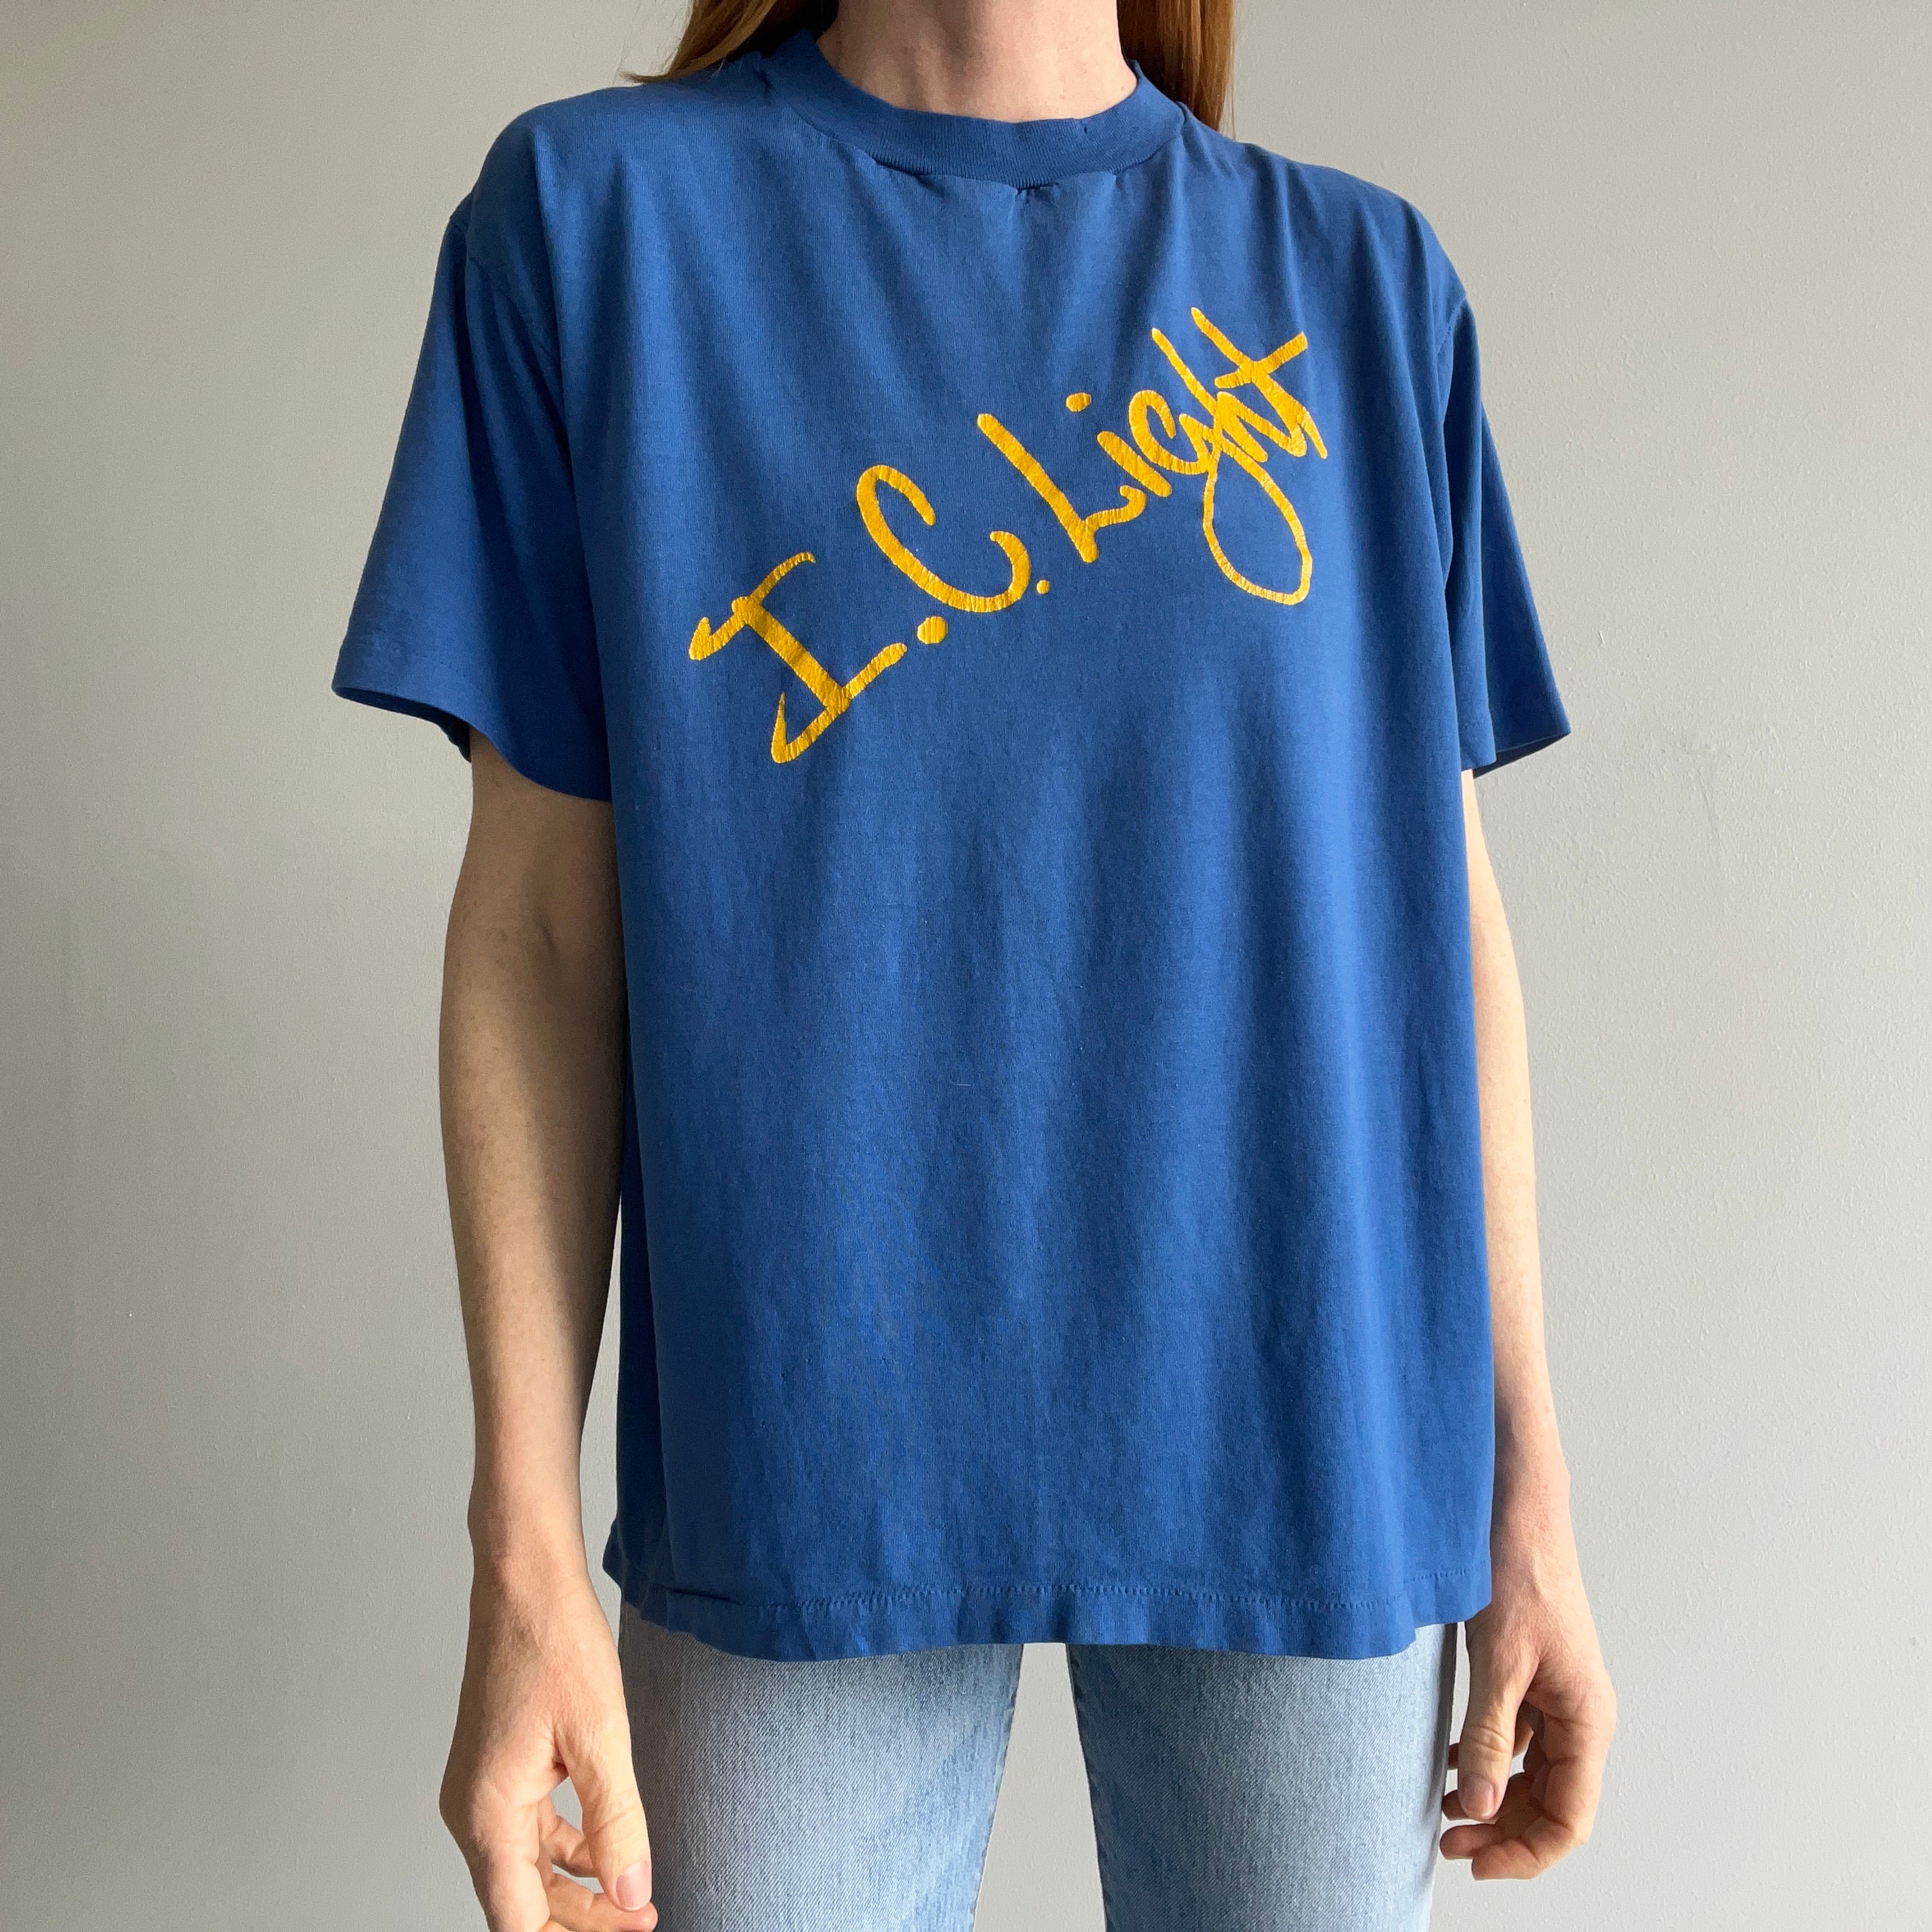 1980s I.C. Light T-Shirt by Velva Sheen